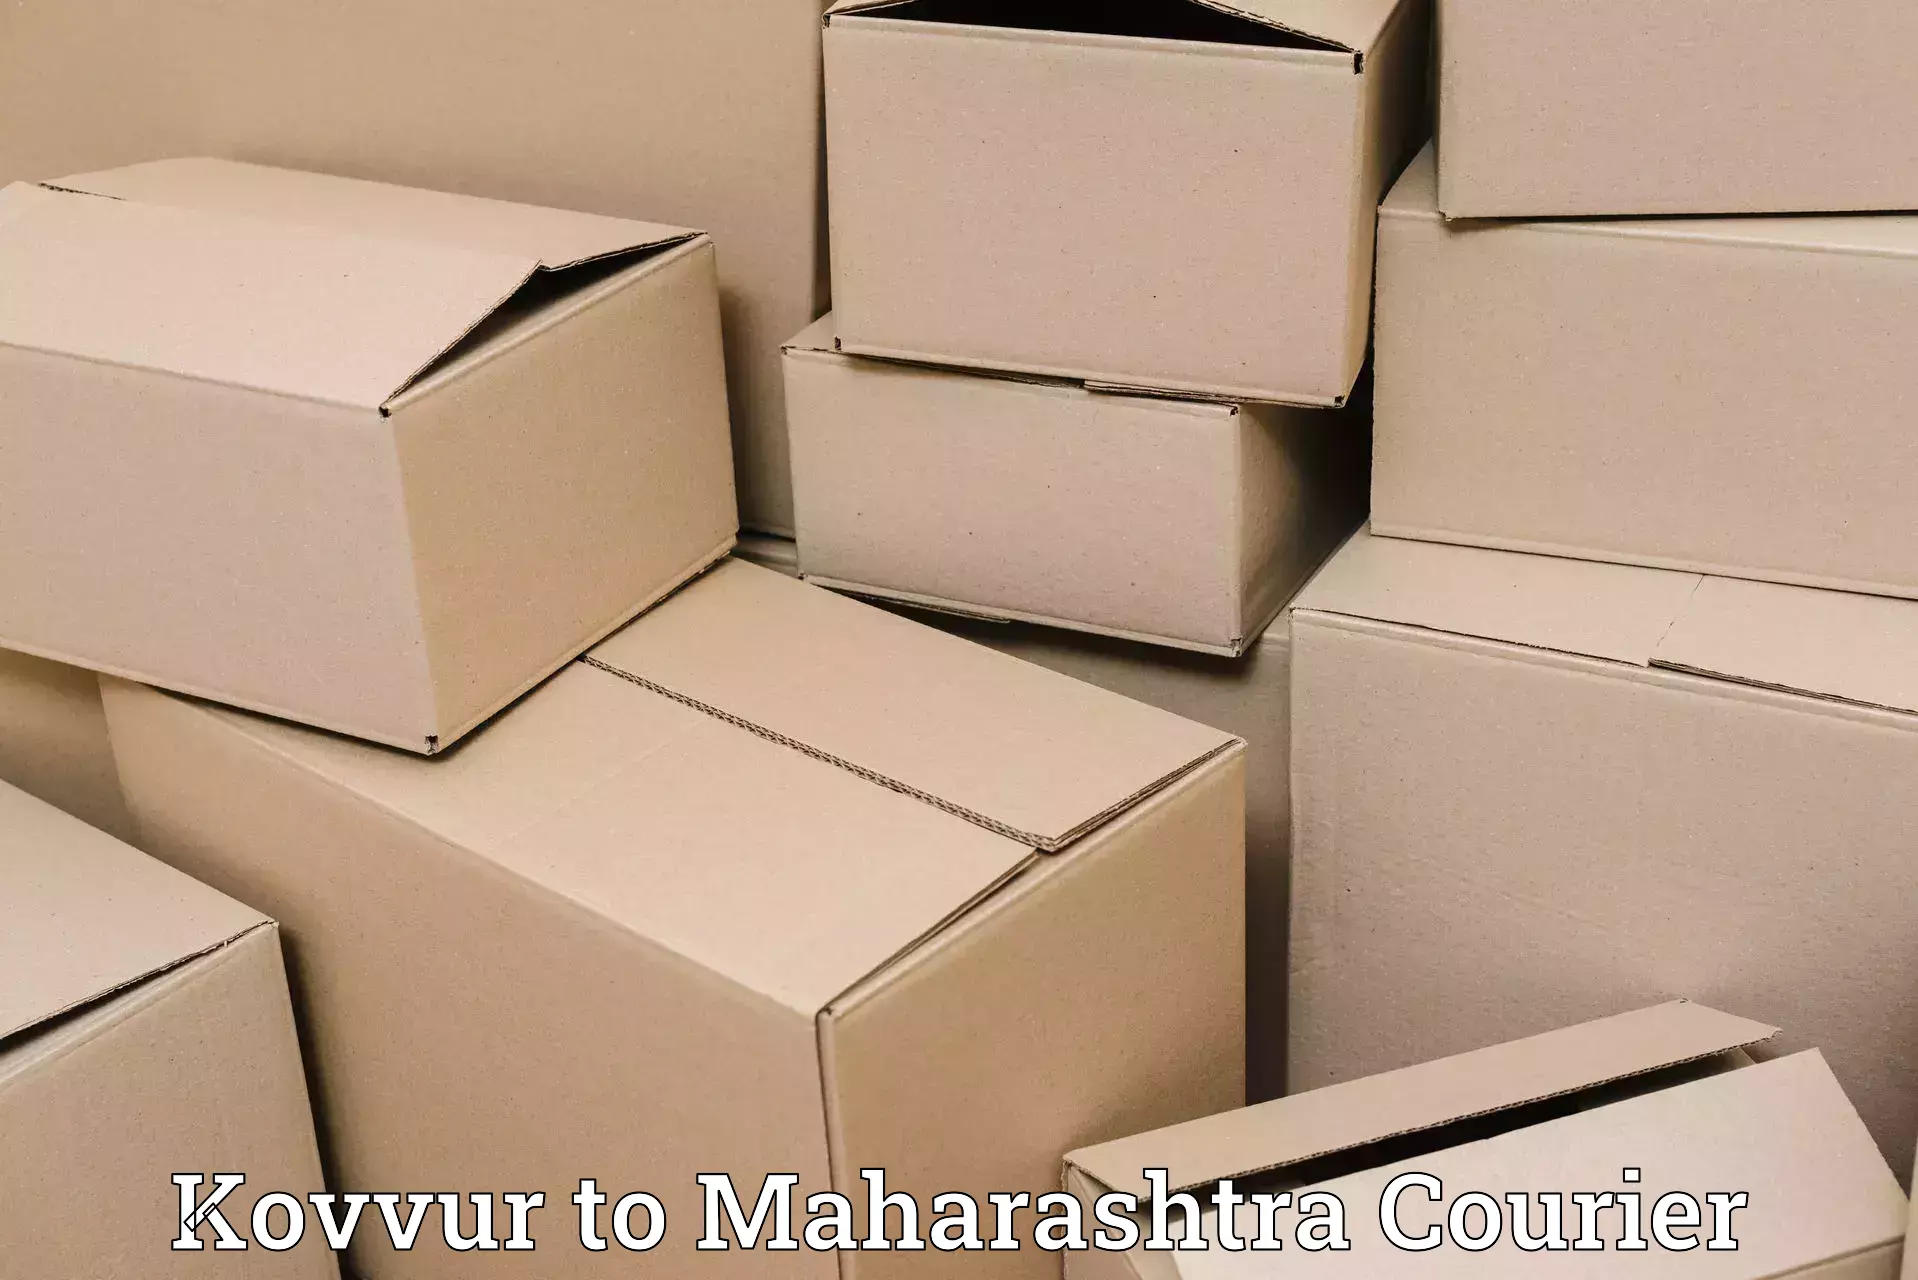 Affordable parcel service Kovvur to Andheri